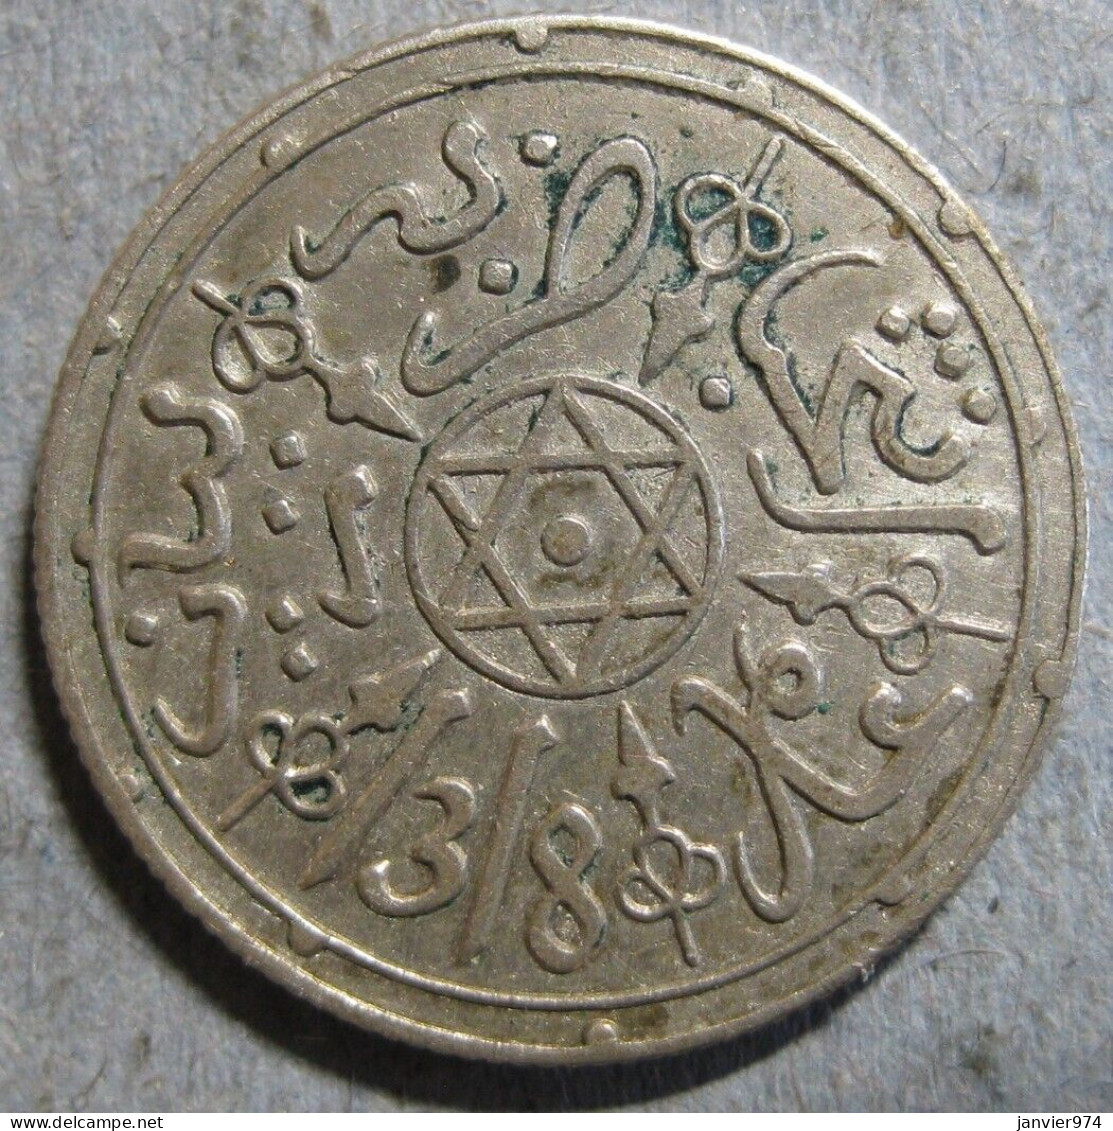 Maroc 1 Dirham (1/10 Rial) AH 1318 - 1901 Paris . En Argent, Lec# 127 - Y# 10.2Maroc  - Morocco